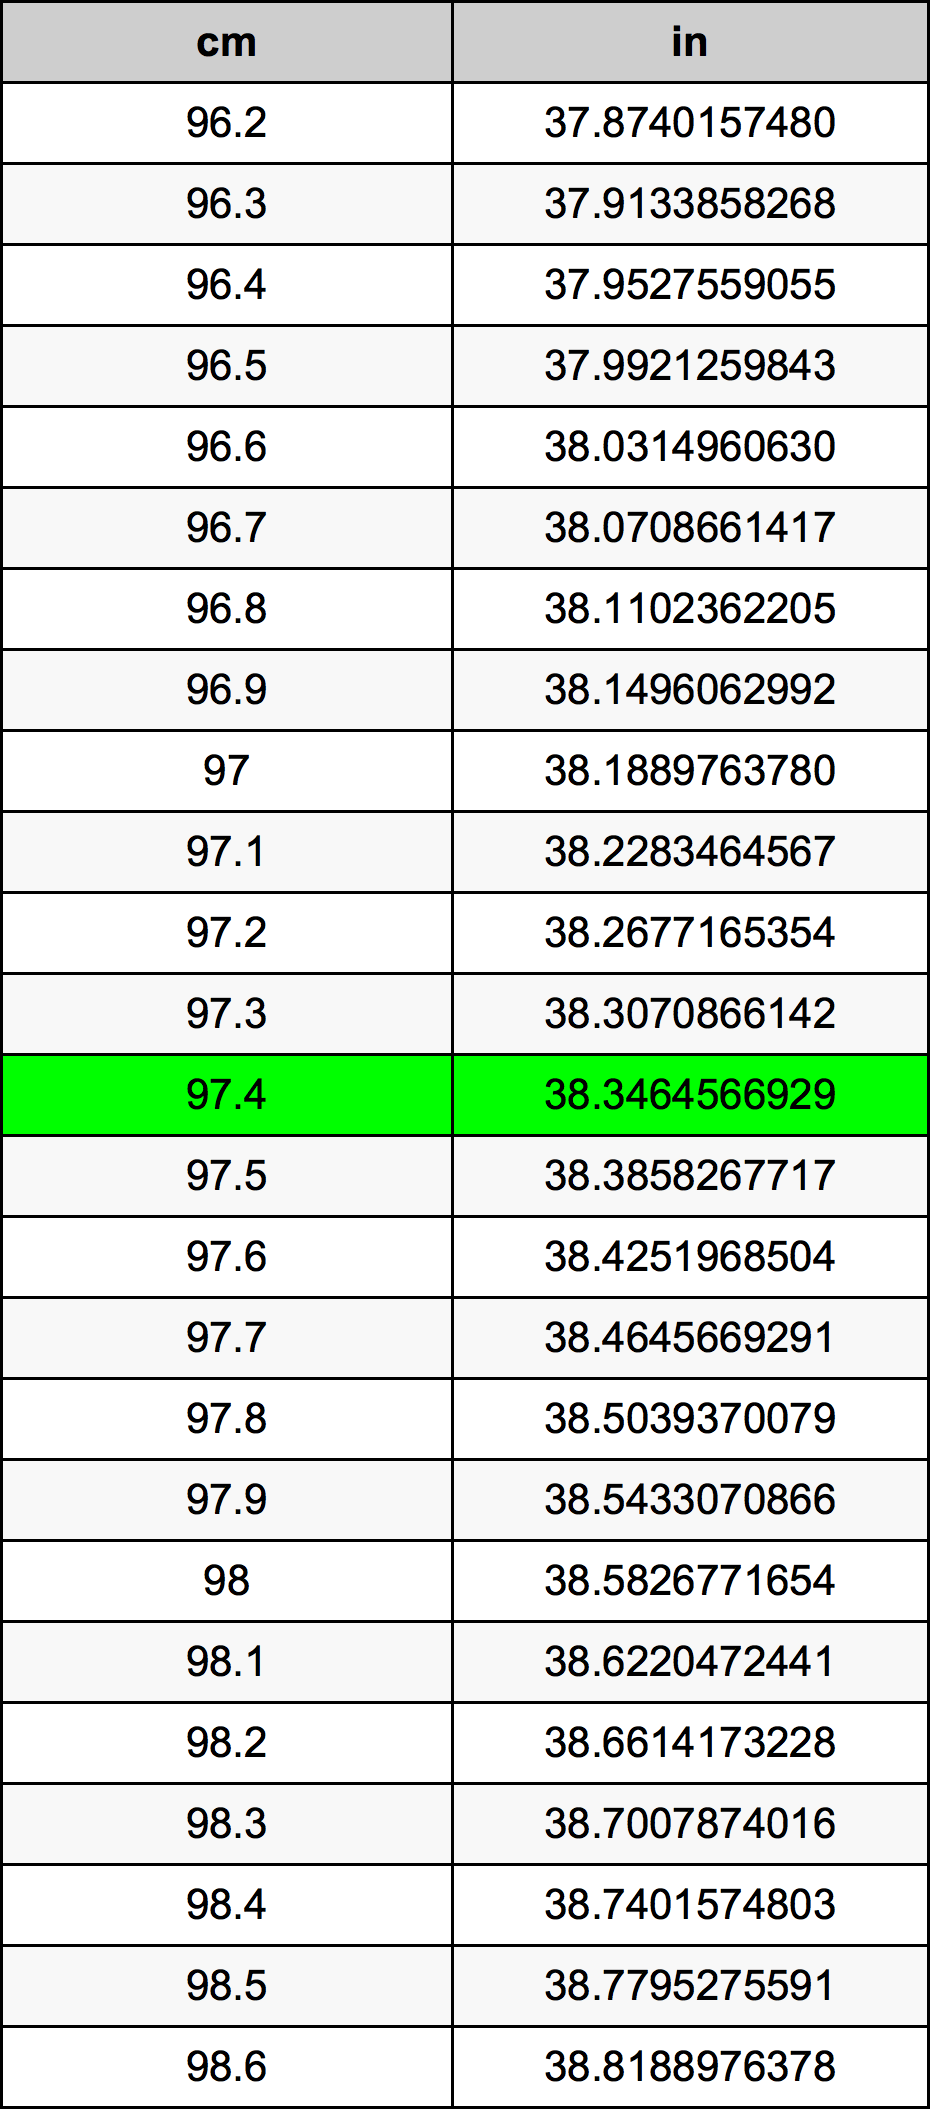 97.4 Centiméter átszámítási táblázat